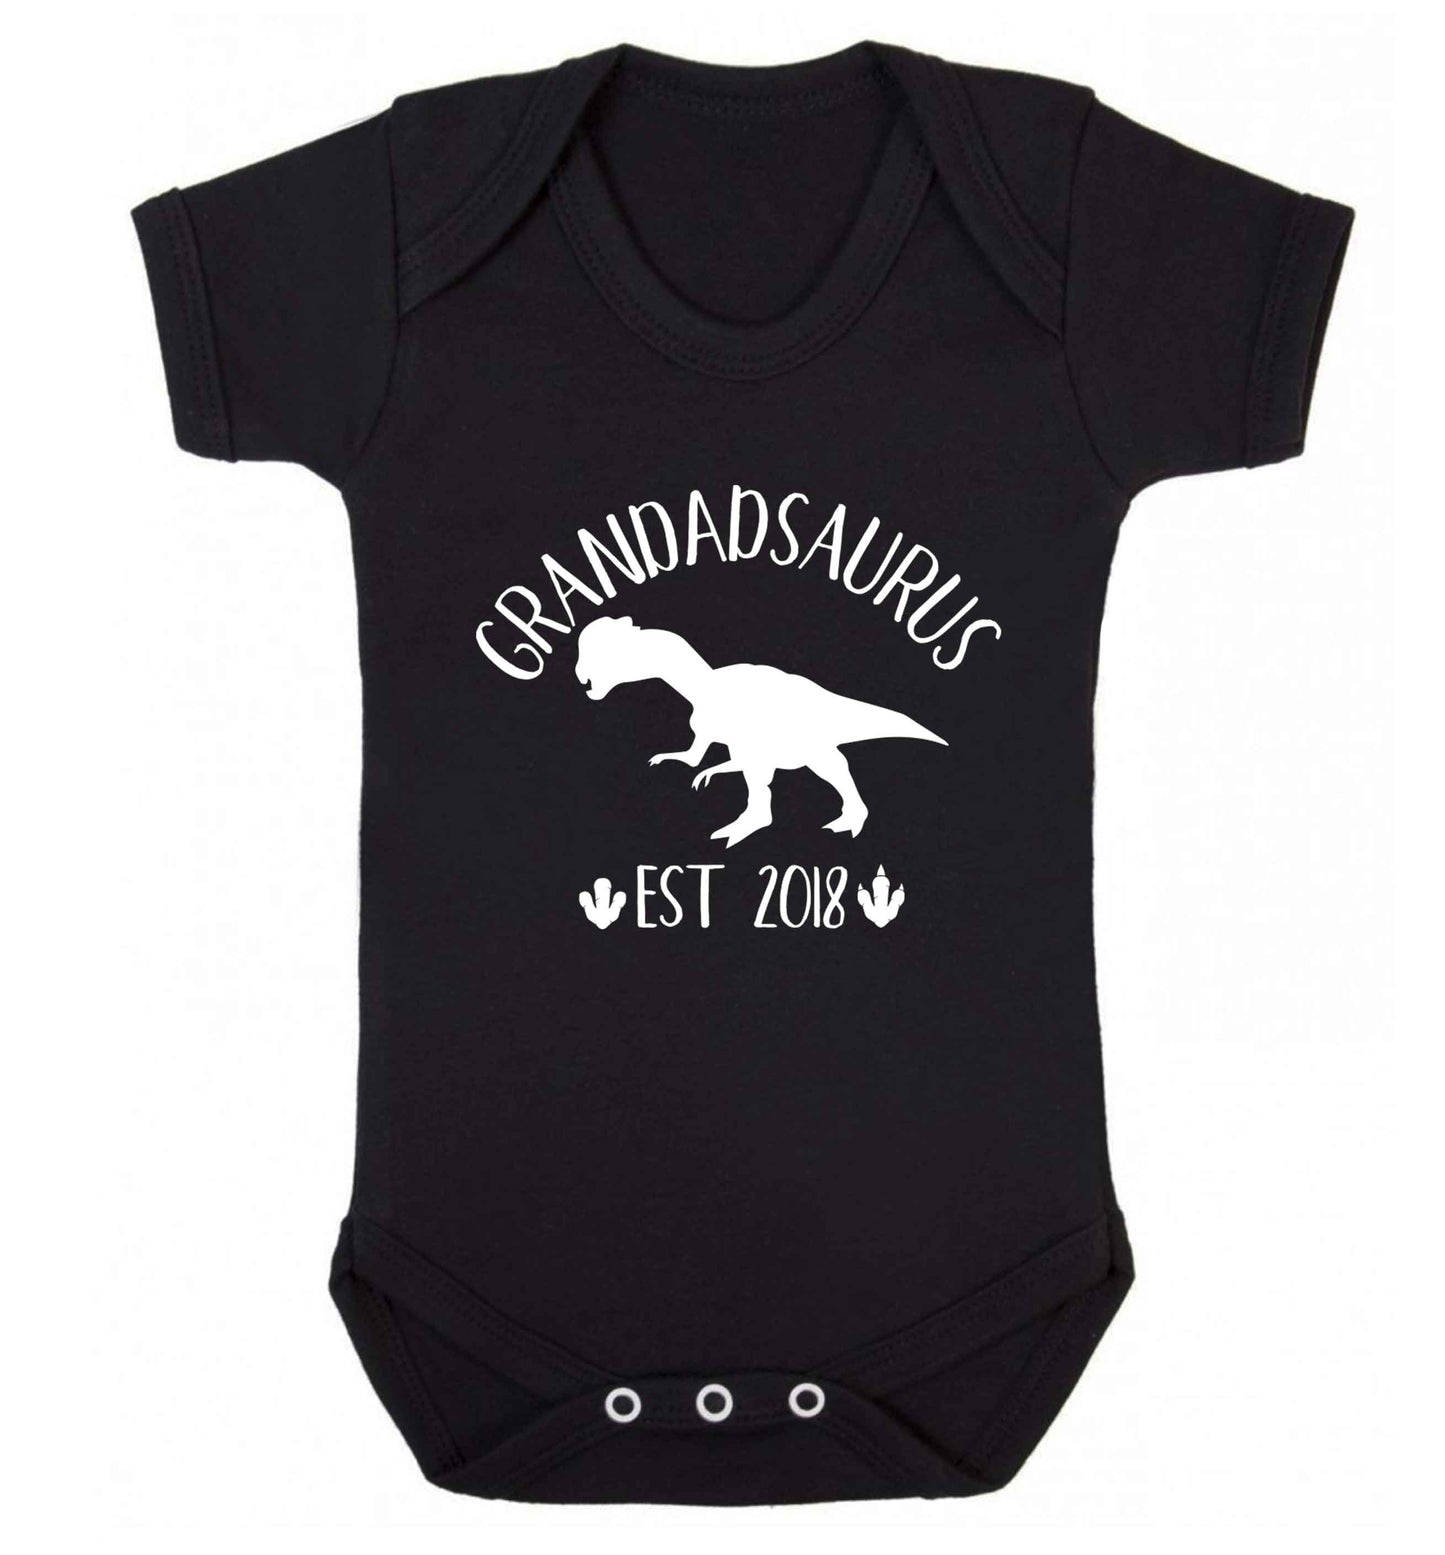 Personalised grandadsaurus since (custom date) Baby Vest black 18-24 months